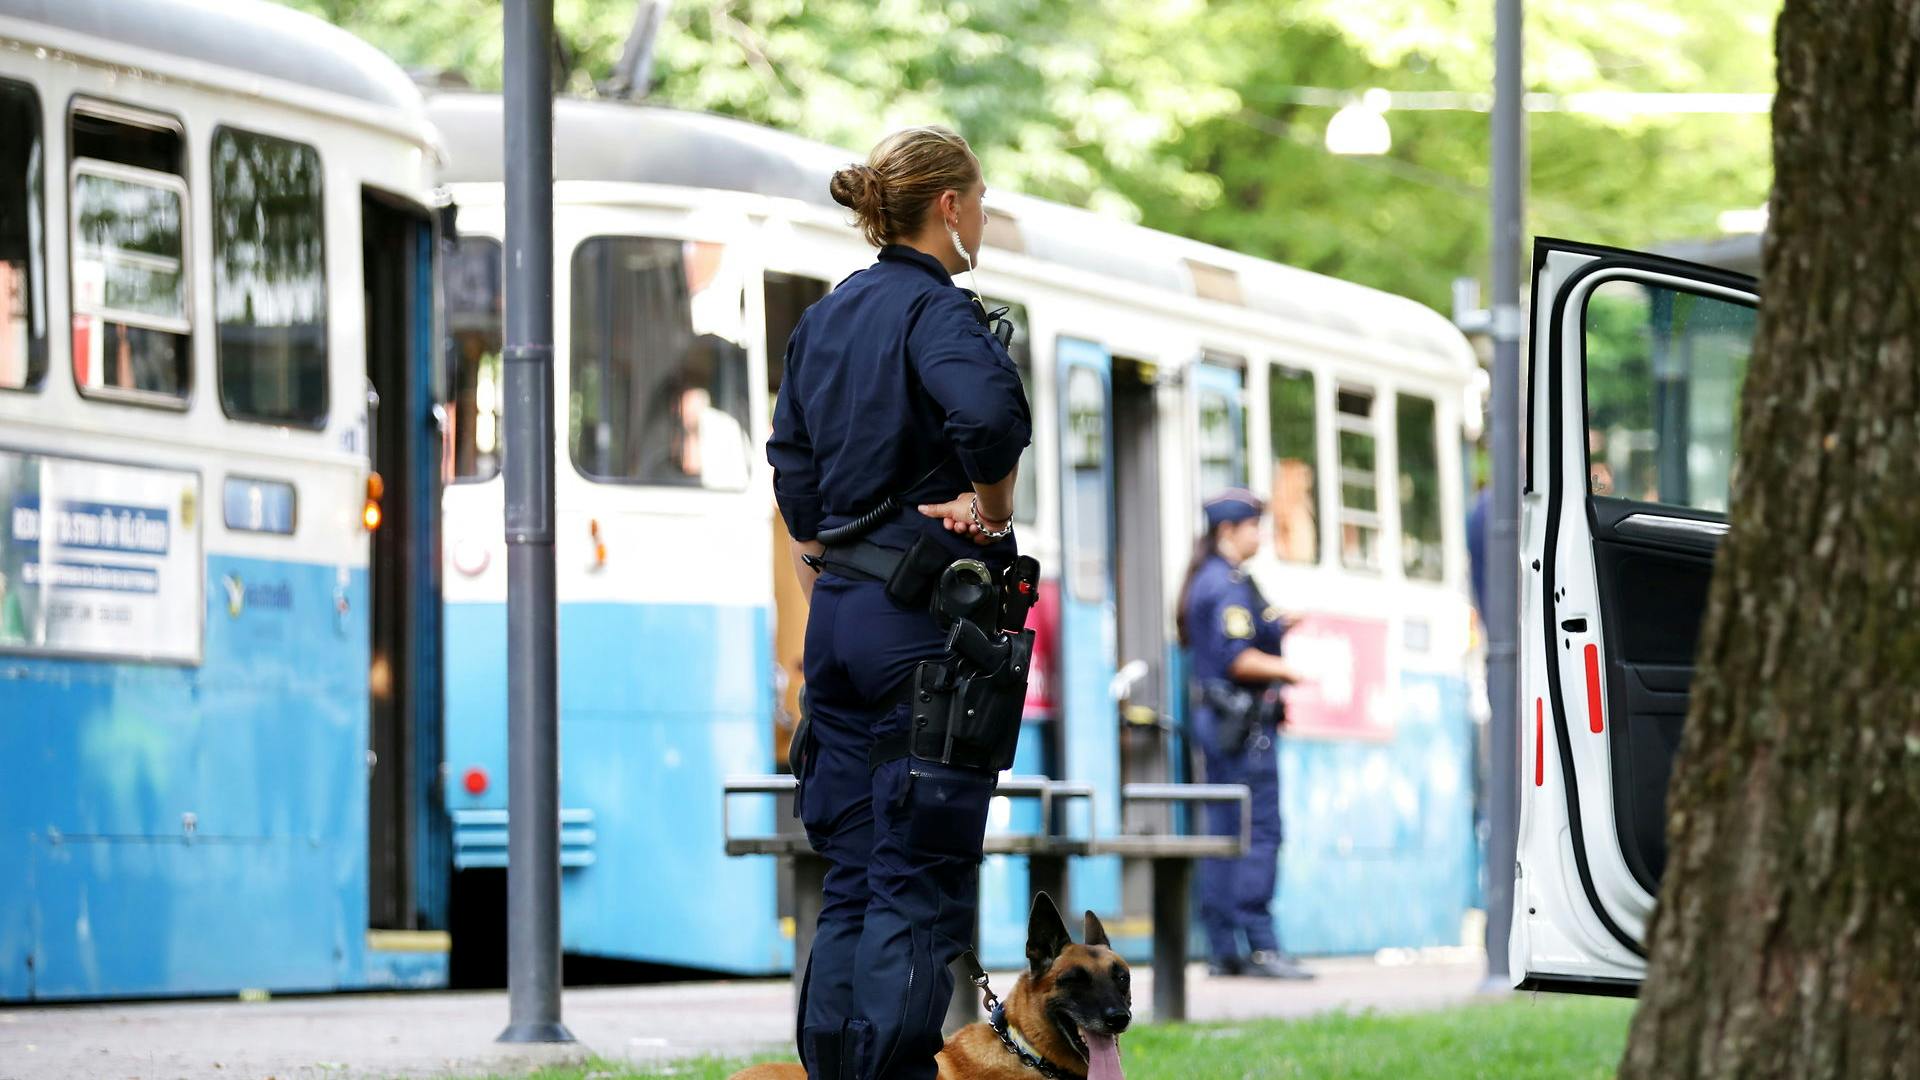 En kvinde i 30'erne er tirsdag morgen blevet ramt af skud i maven i en sporvogn i den svenske by Göteborg.